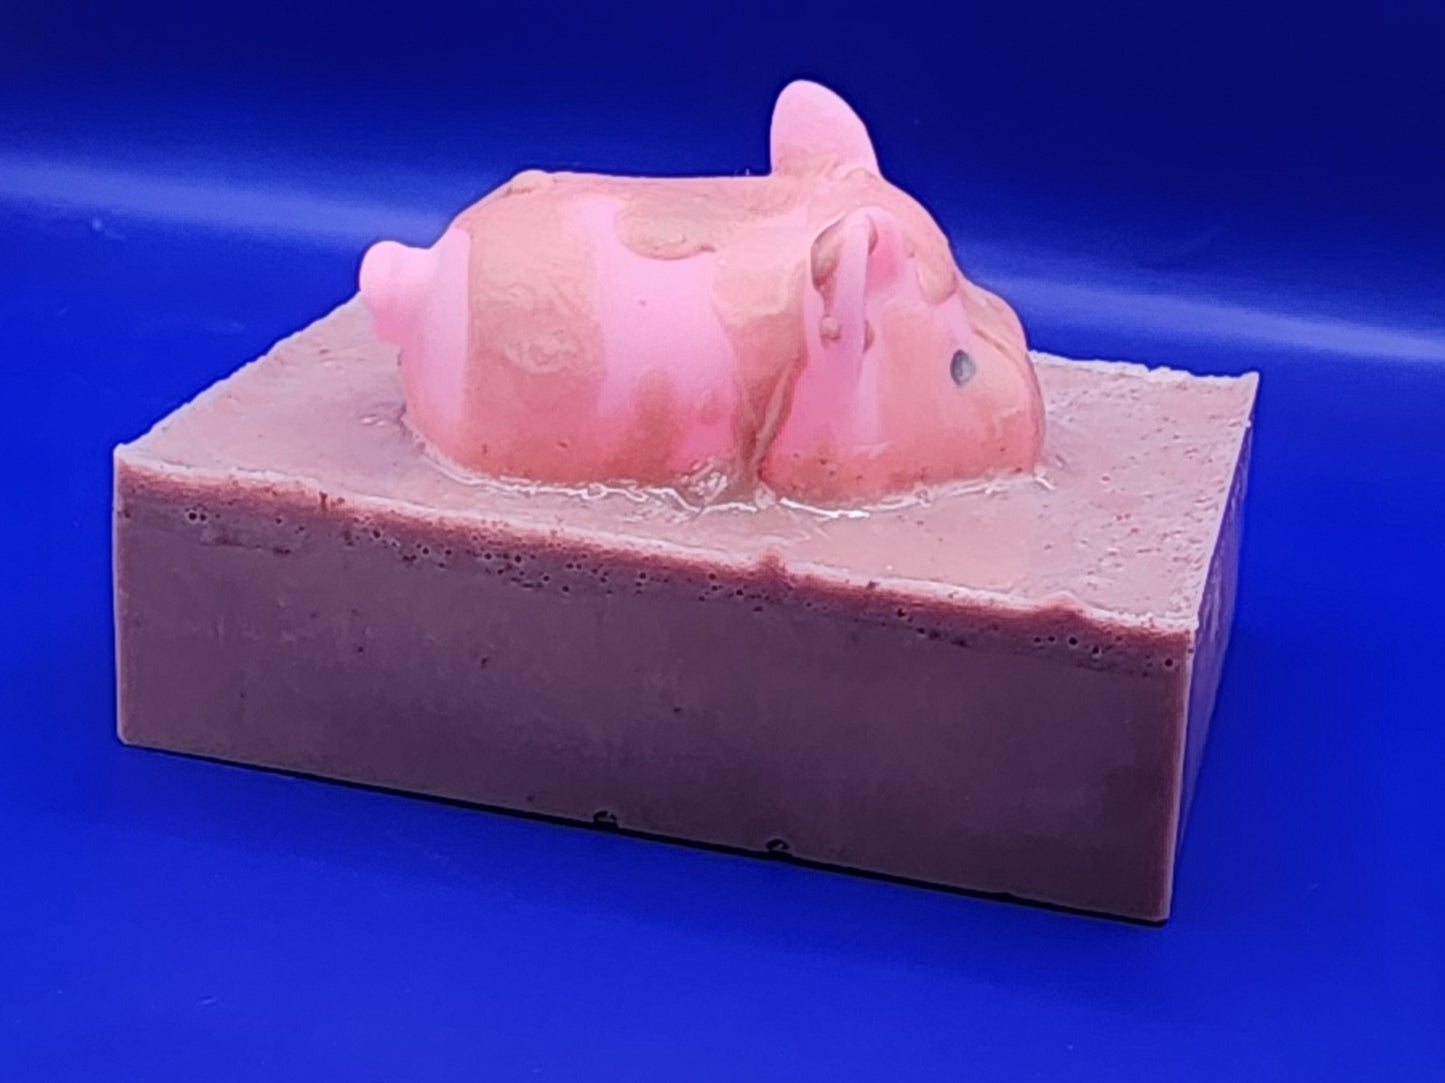 Pig Themed Goat's Milk Soap for Kids